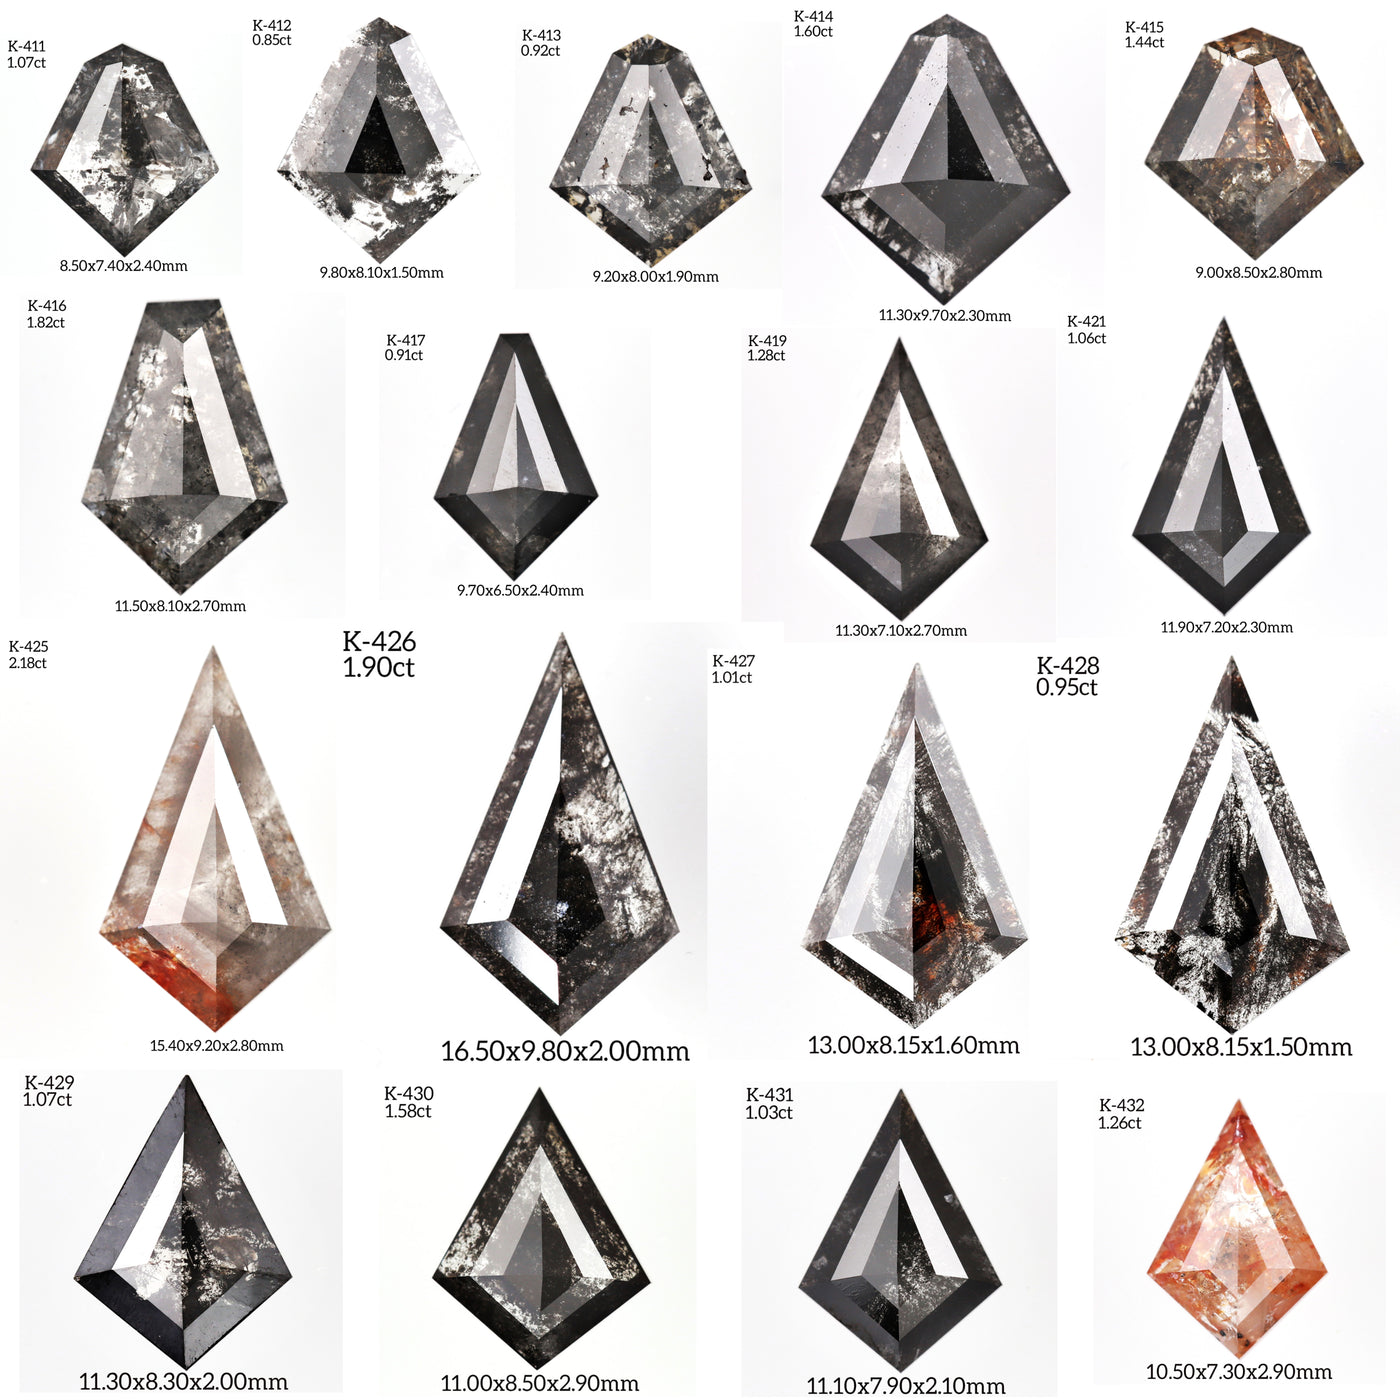 K427 - Salt and pepper kite diamond